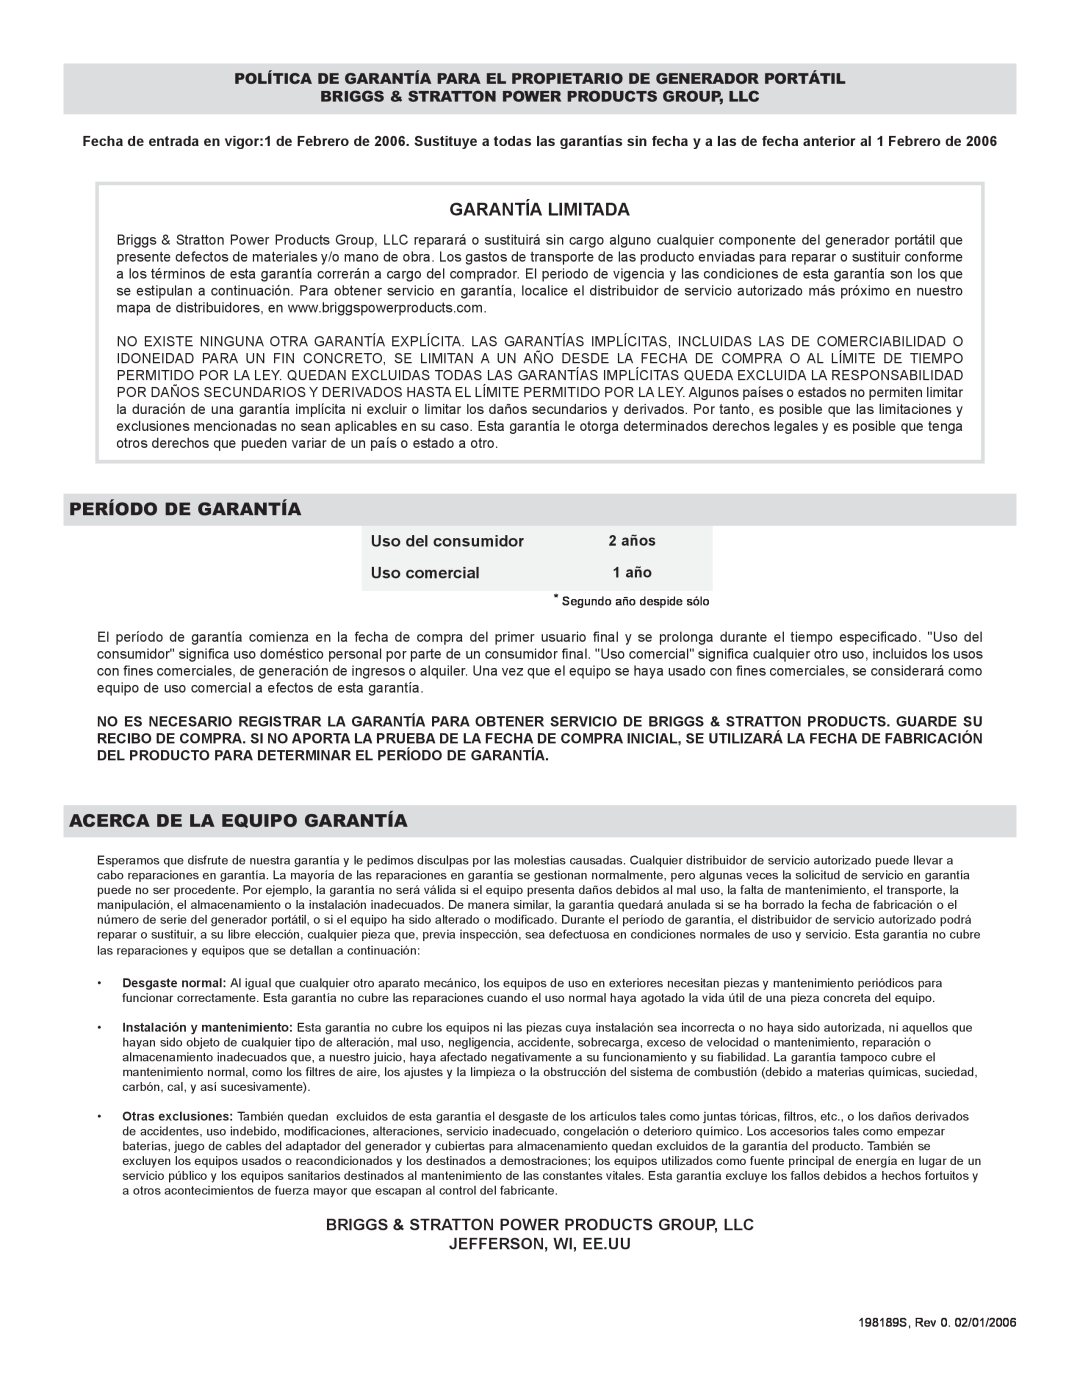 Briggs & Stratton 30205 manual Garantía Limitada, Período De Garantía, Acerca De La Equipo Garantía, 2 años, 1 año 